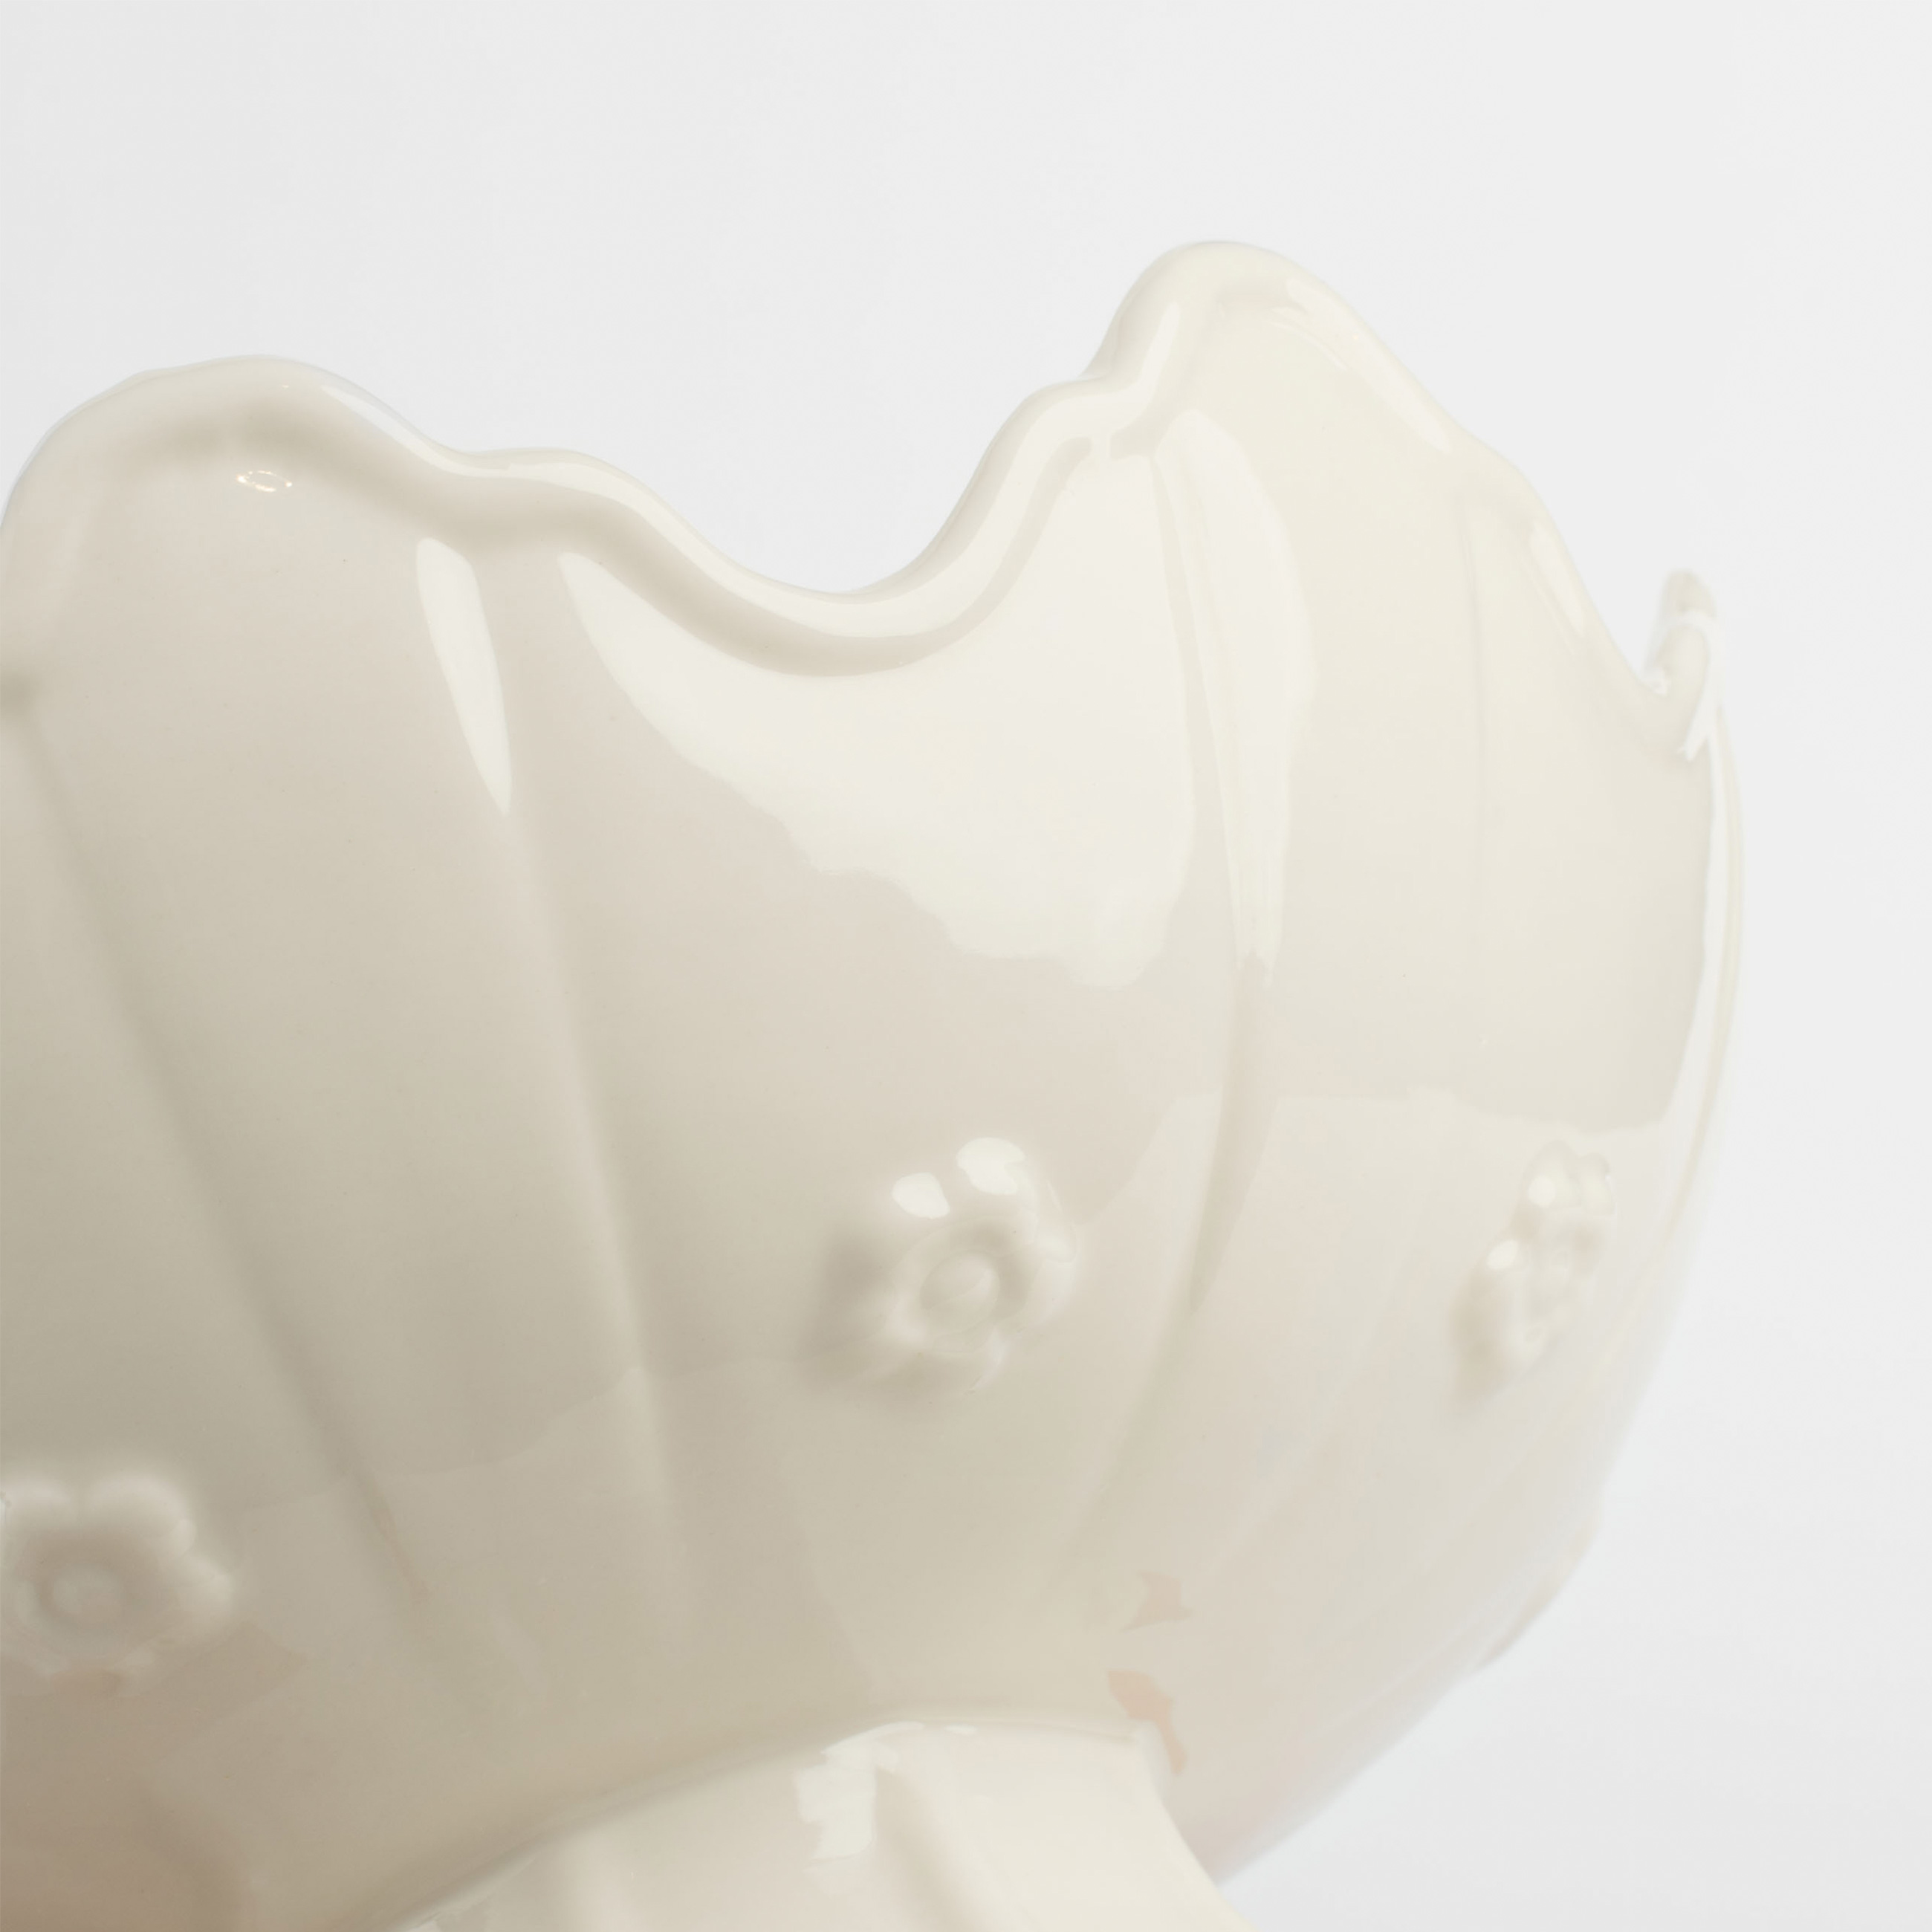 Конфетница на ножке, 17х11 см, фарфор Porcelain, бело-бежевая, Крольчонок в вазе, Natural Easter изображение № 5